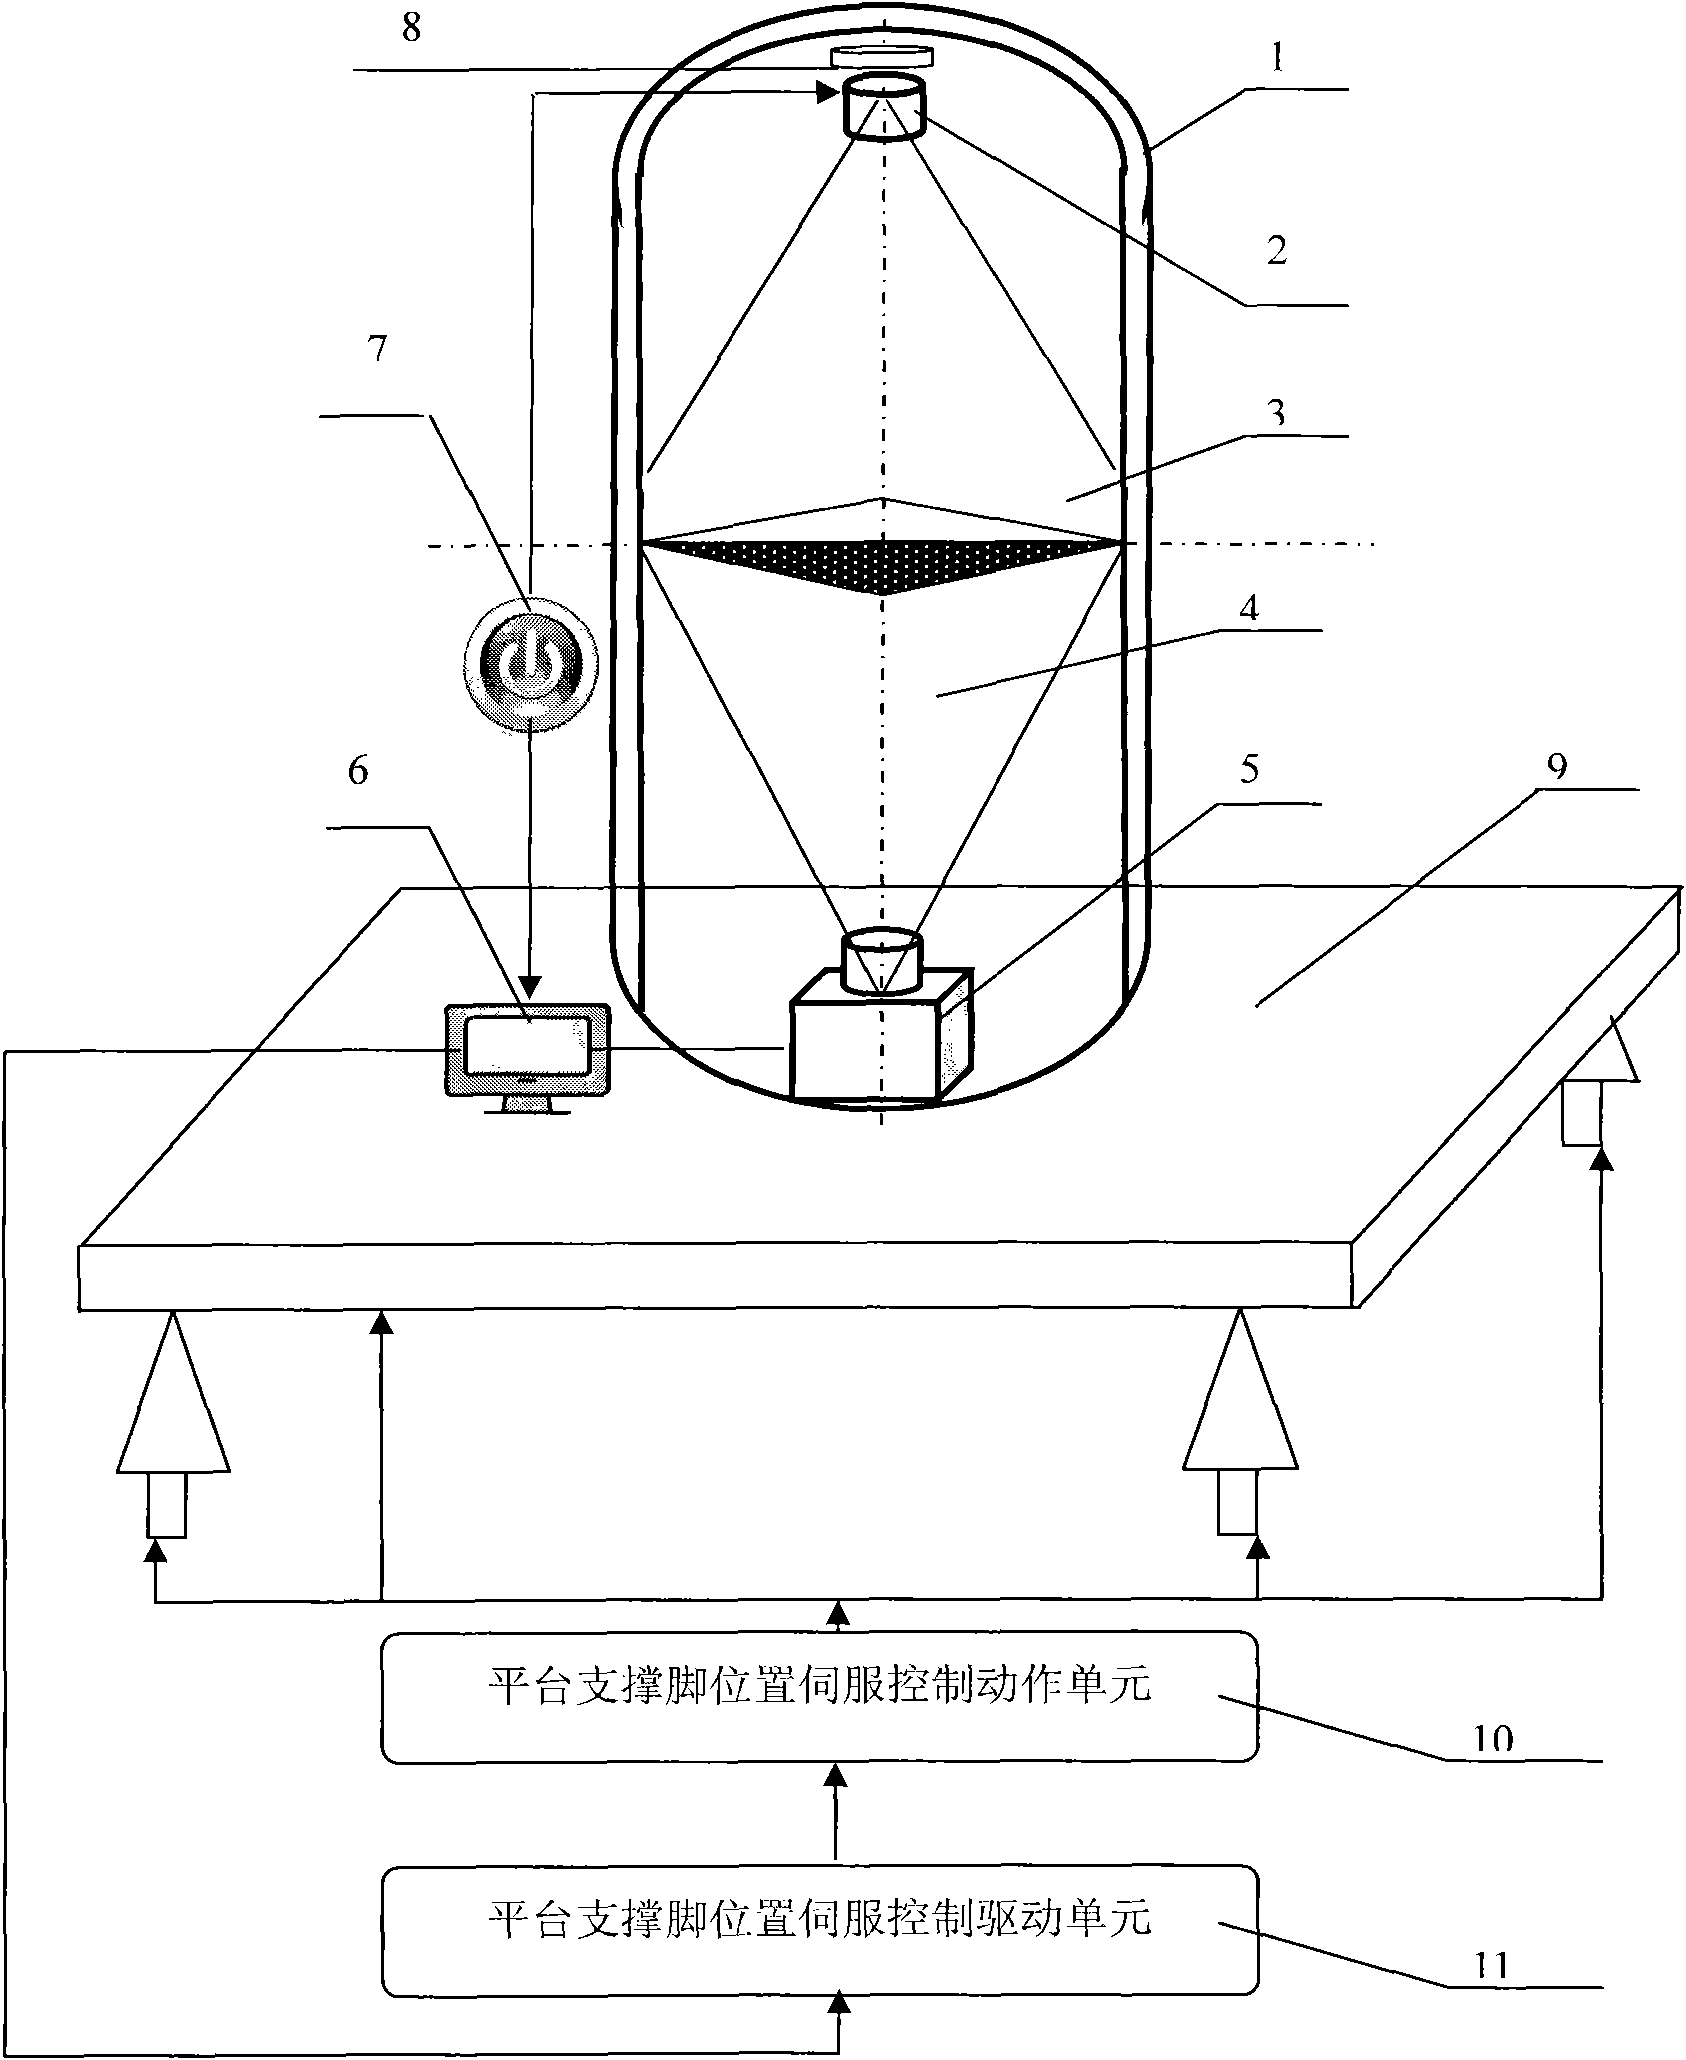 Platform leveling device based on cylindrical model